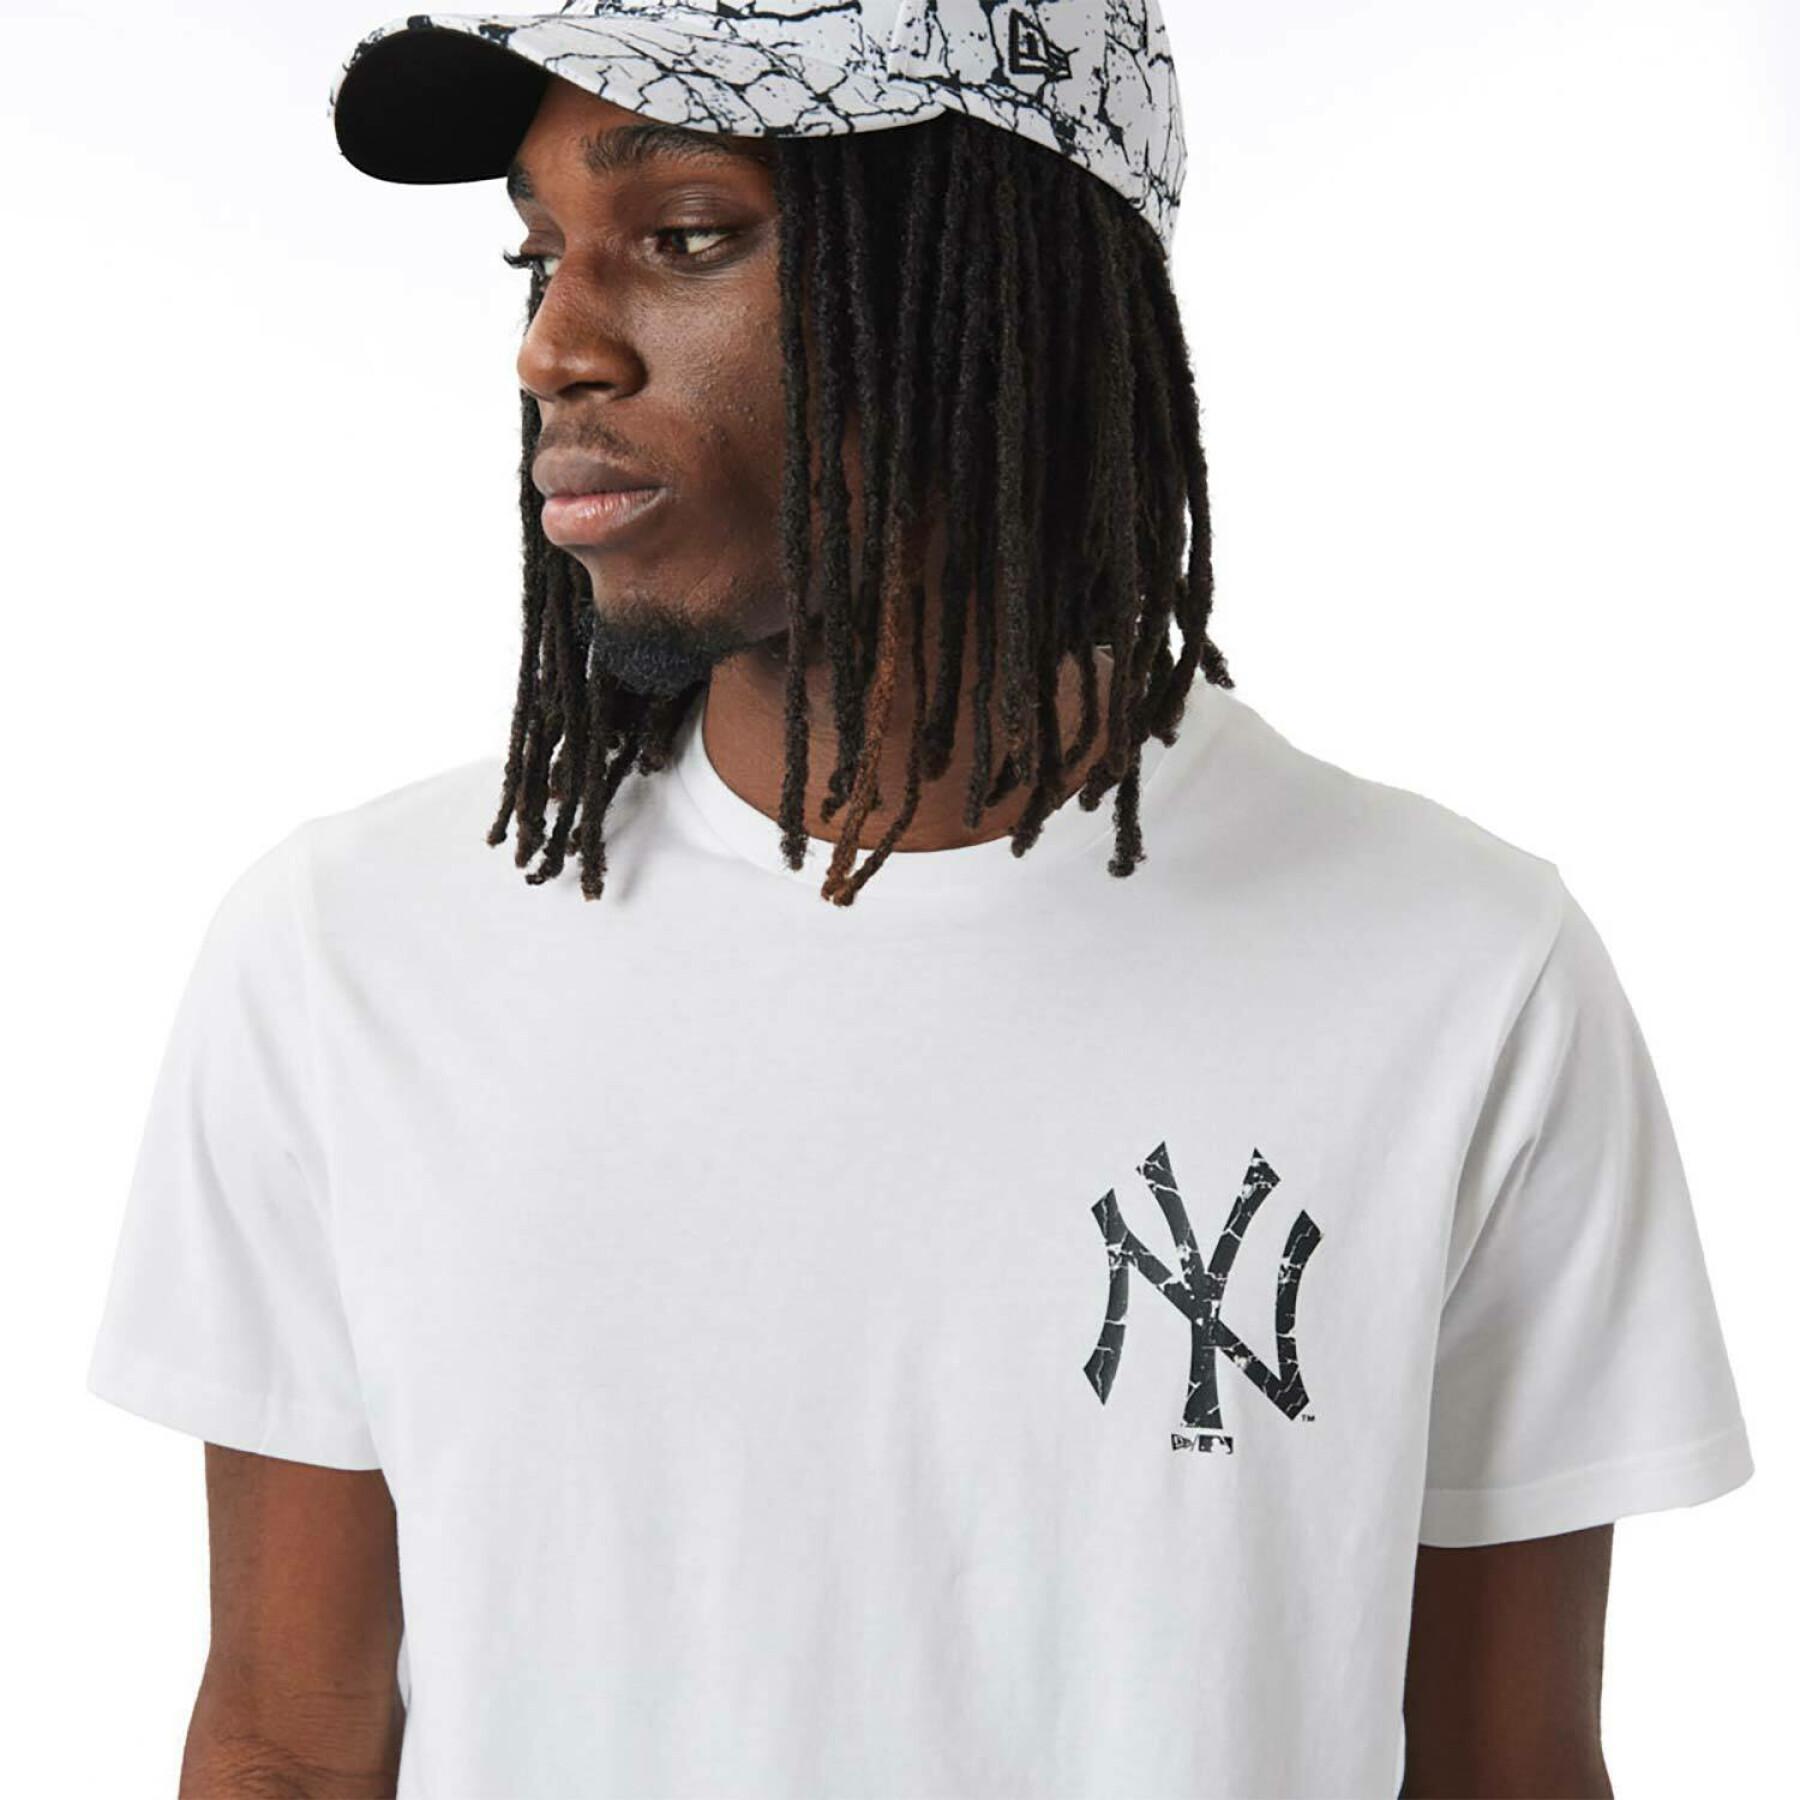 T-shirt MLB Seasonal New York Yankees